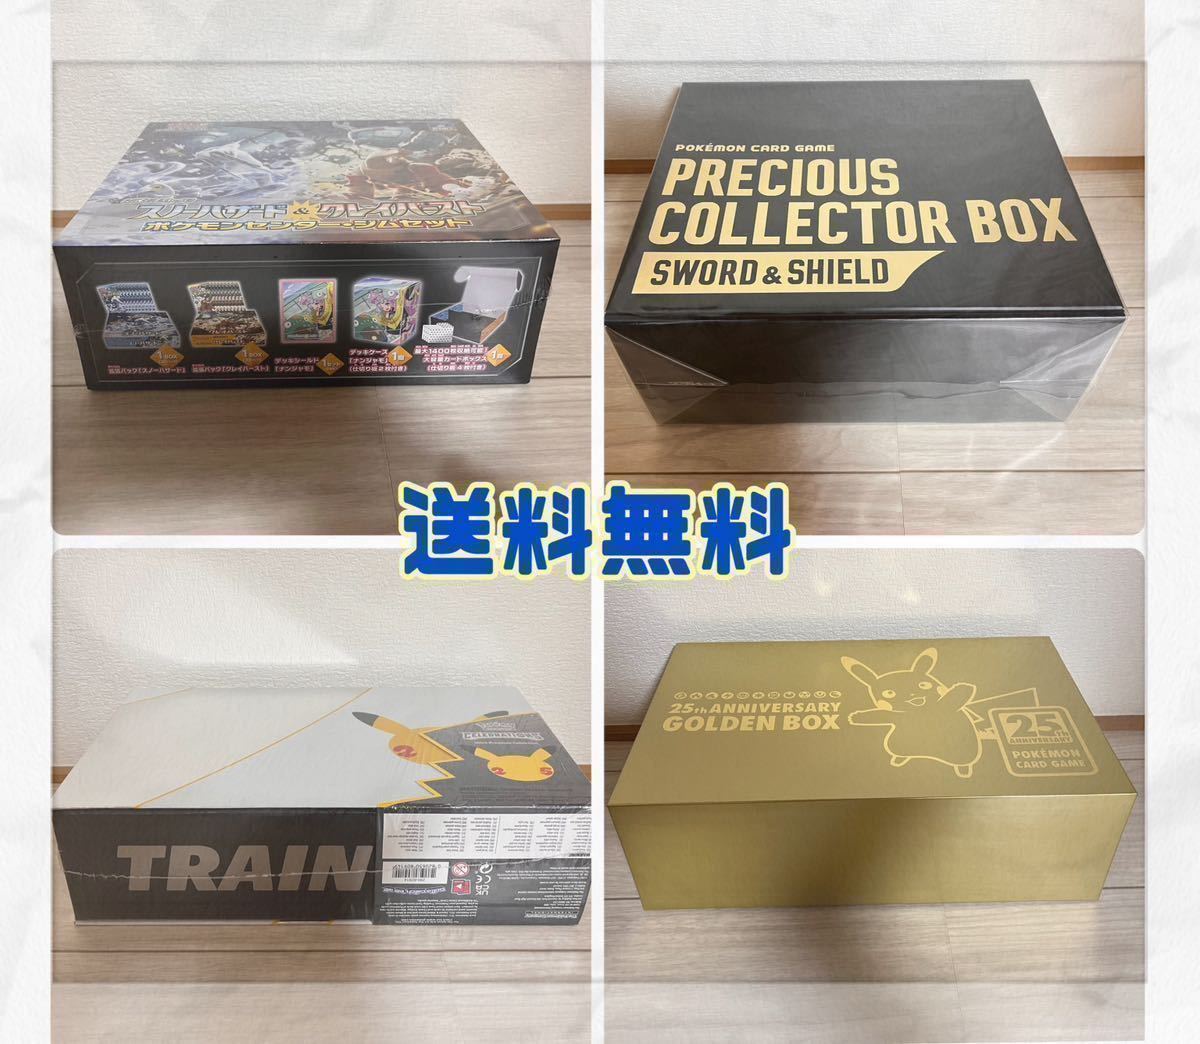 ポケモンカードゲーム プレシャスコレクターボックス 25th anniversary golden box ナンジャモジムセットシュリンク付き Pokemon Card Game